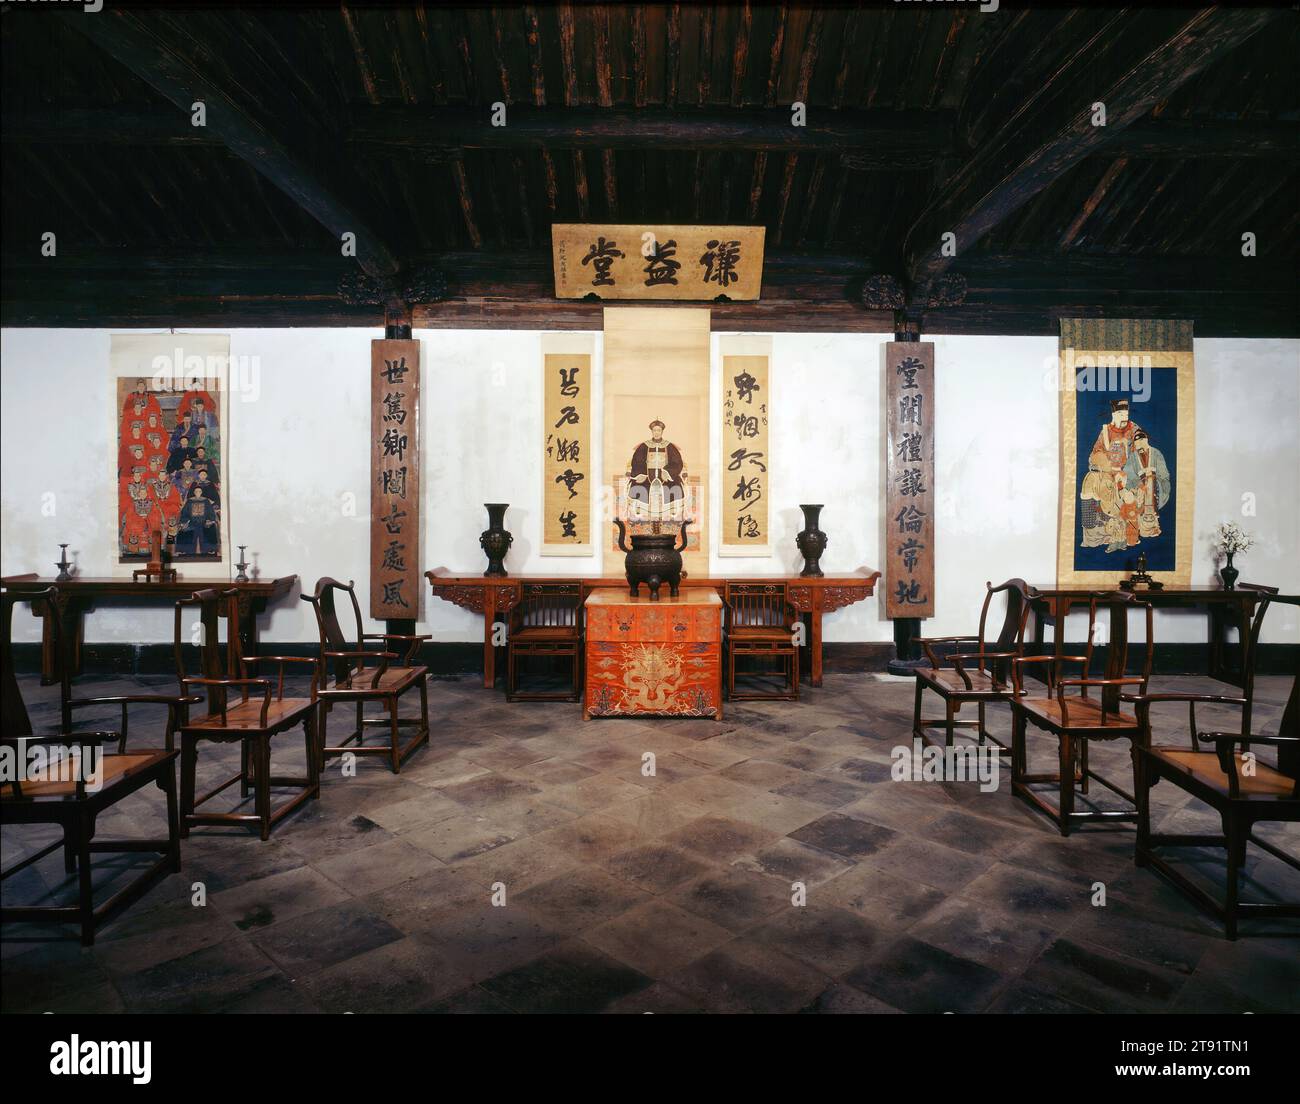 Salle de réception de la famille Wu, début du 17e siècle, 216 x 483 x 288 po. (548,64 x 1226,82 x 731,52 cm) (dimension extérieure du mur), Bois, céramique, carrelage, plâtre, laque, pierre, Chine, 17e siècle, cette salle de réception à trois baies faisait à l'origine partie d'une maison de cour traditionnelle de style Suzhou située dans le quartier est de Dongting près de la ville actuelle de Dongshan. Construit au début des années 1600 par la famille Wu, il a servi de salle de cérémonie principale (zhongtang) d'une maison traditionnelle de classe supérieure. C’était un espace public où les aînés effectuaient des rituels honorant leurs ancêtres, recevaient des invités Banque D'Images